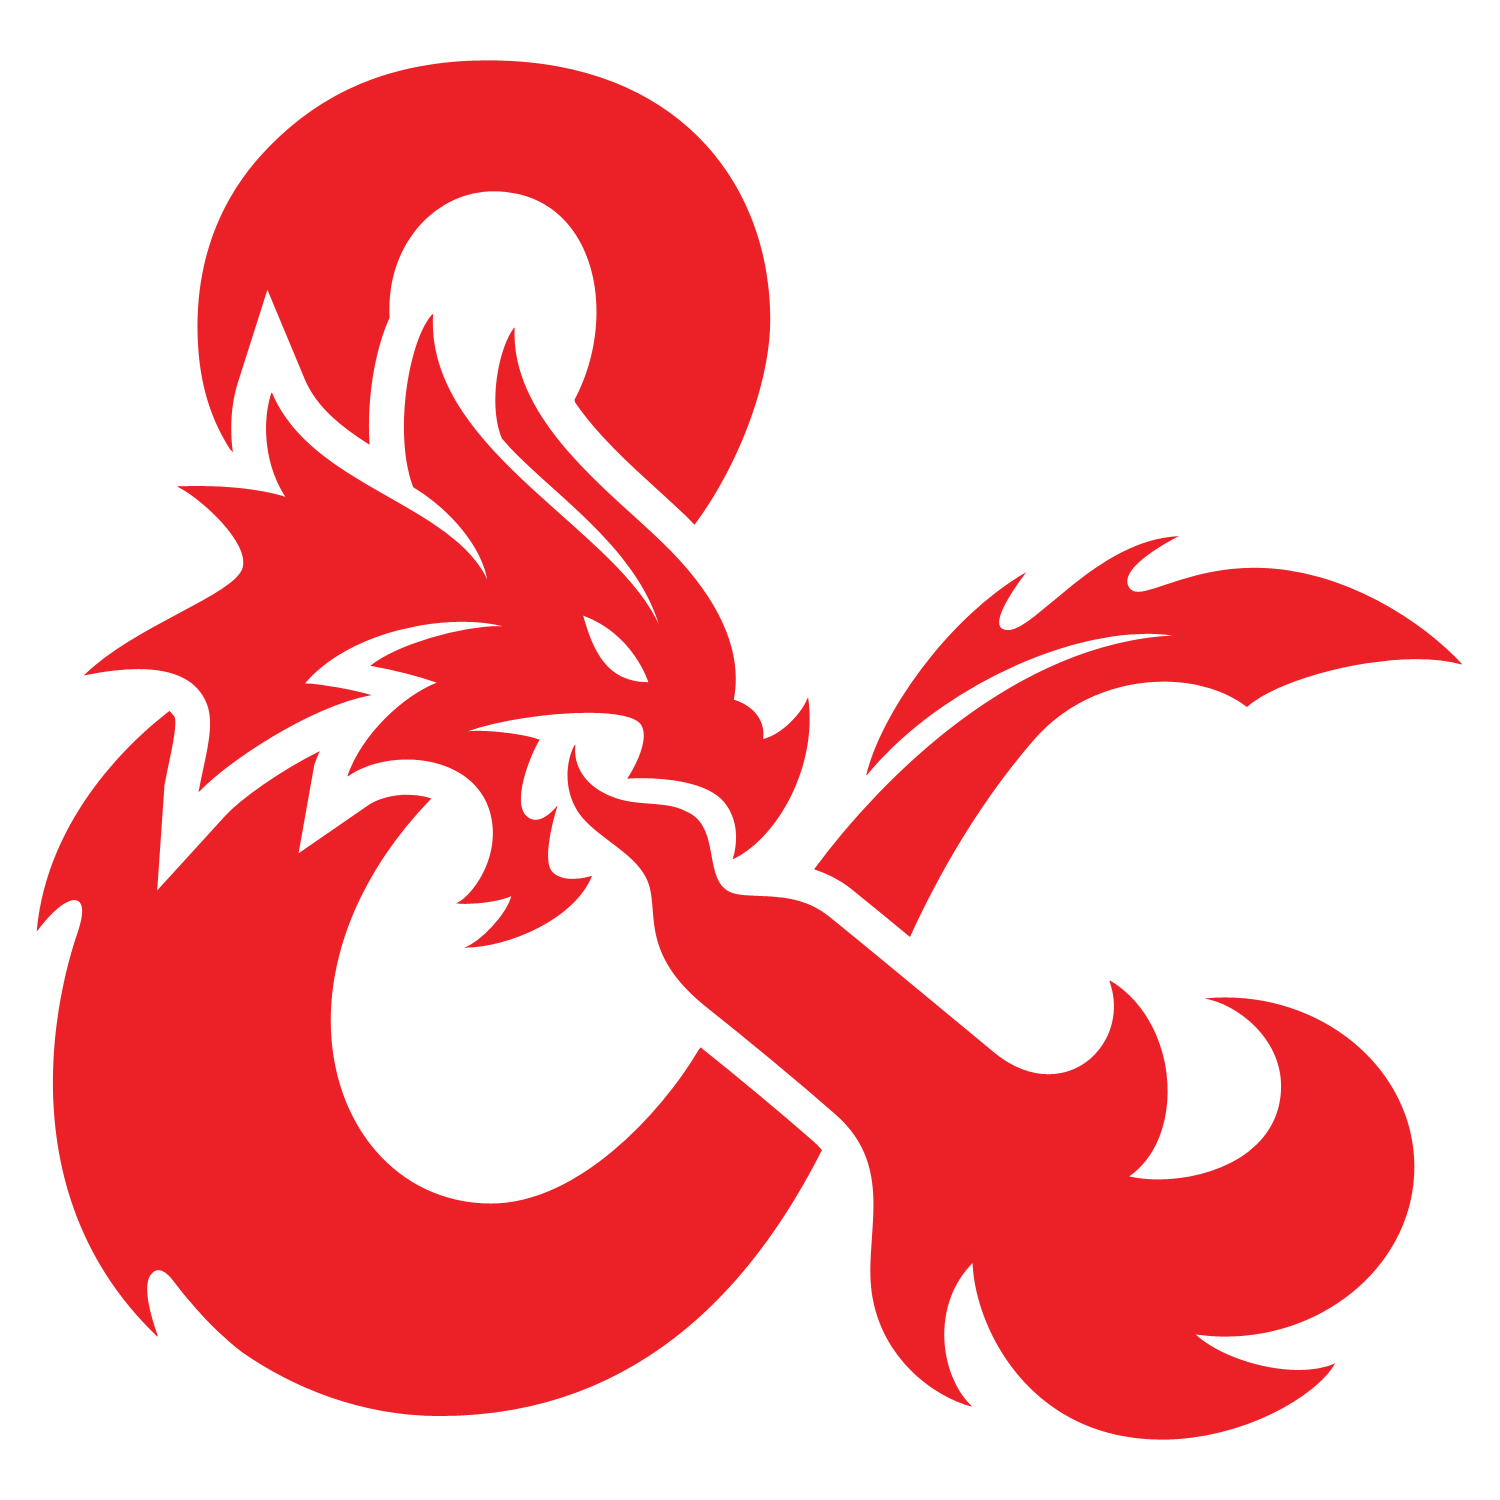 Dungeons&Dragons Logo